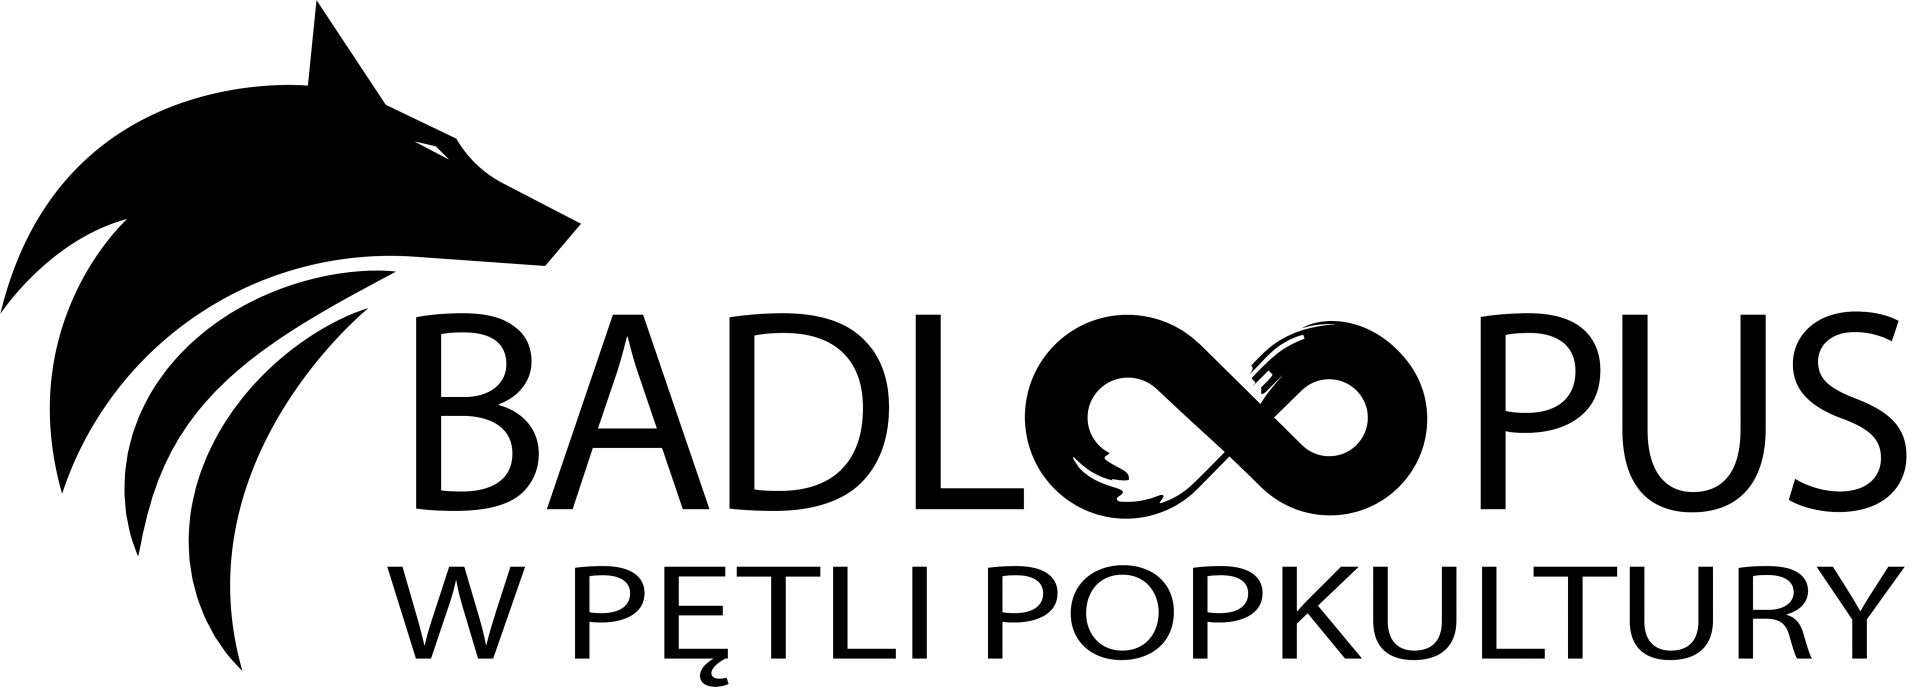 Logo z napisem: Badloopus w pętli popkultury i grafiką przedstawiającą głowę wilka